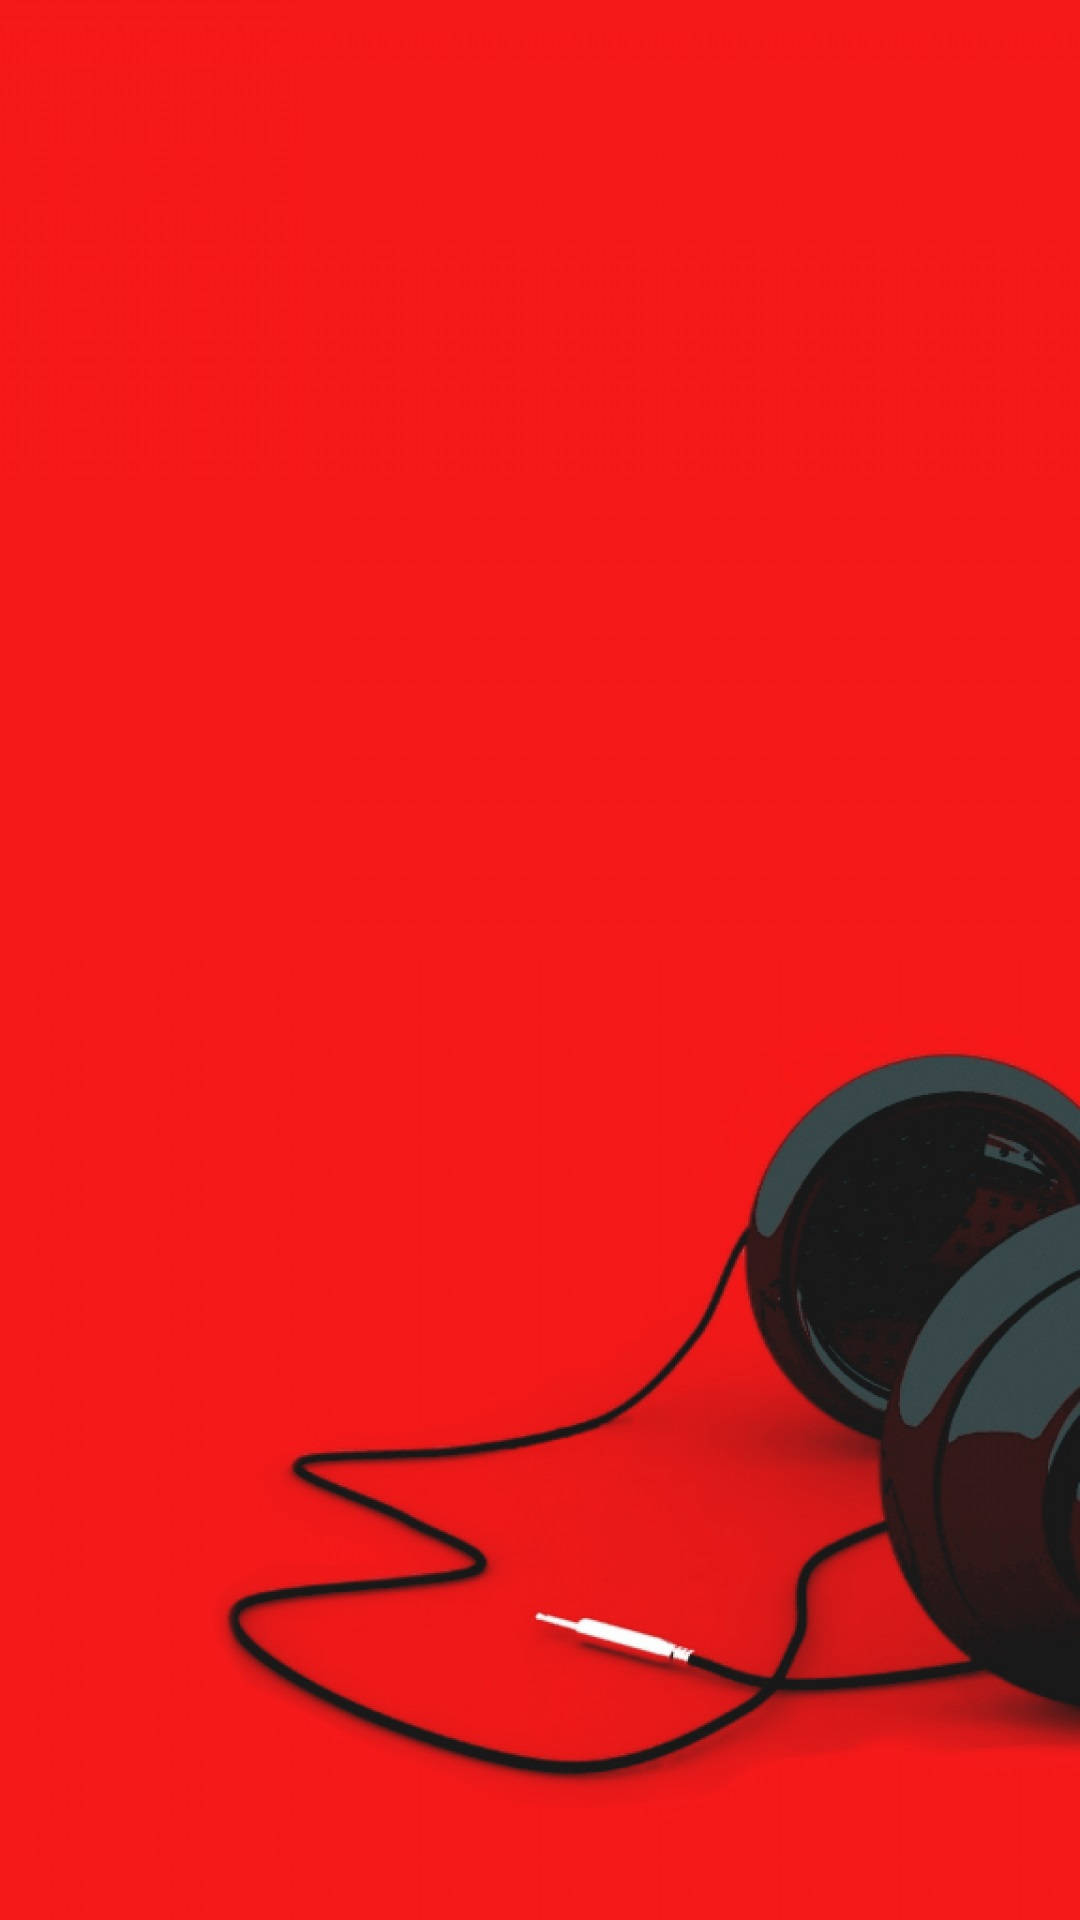 Kablede Hovedtelefoner Rød Iphone Wallpaper